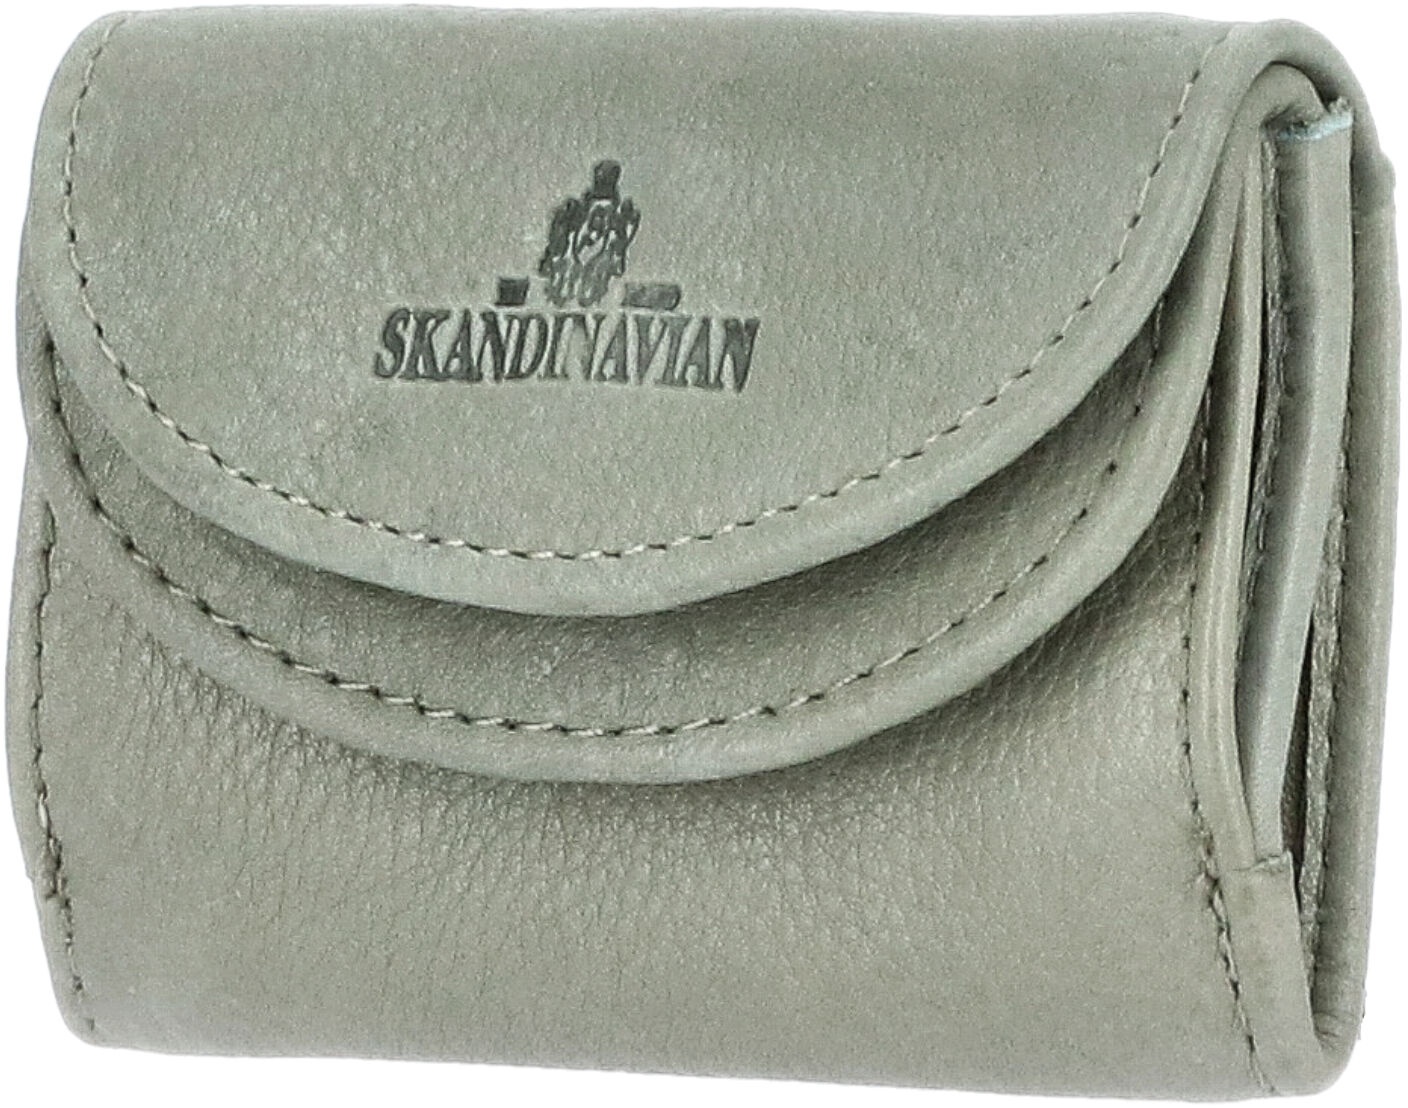 The Skandinavian Brand Damen Leder Geldbörse mint